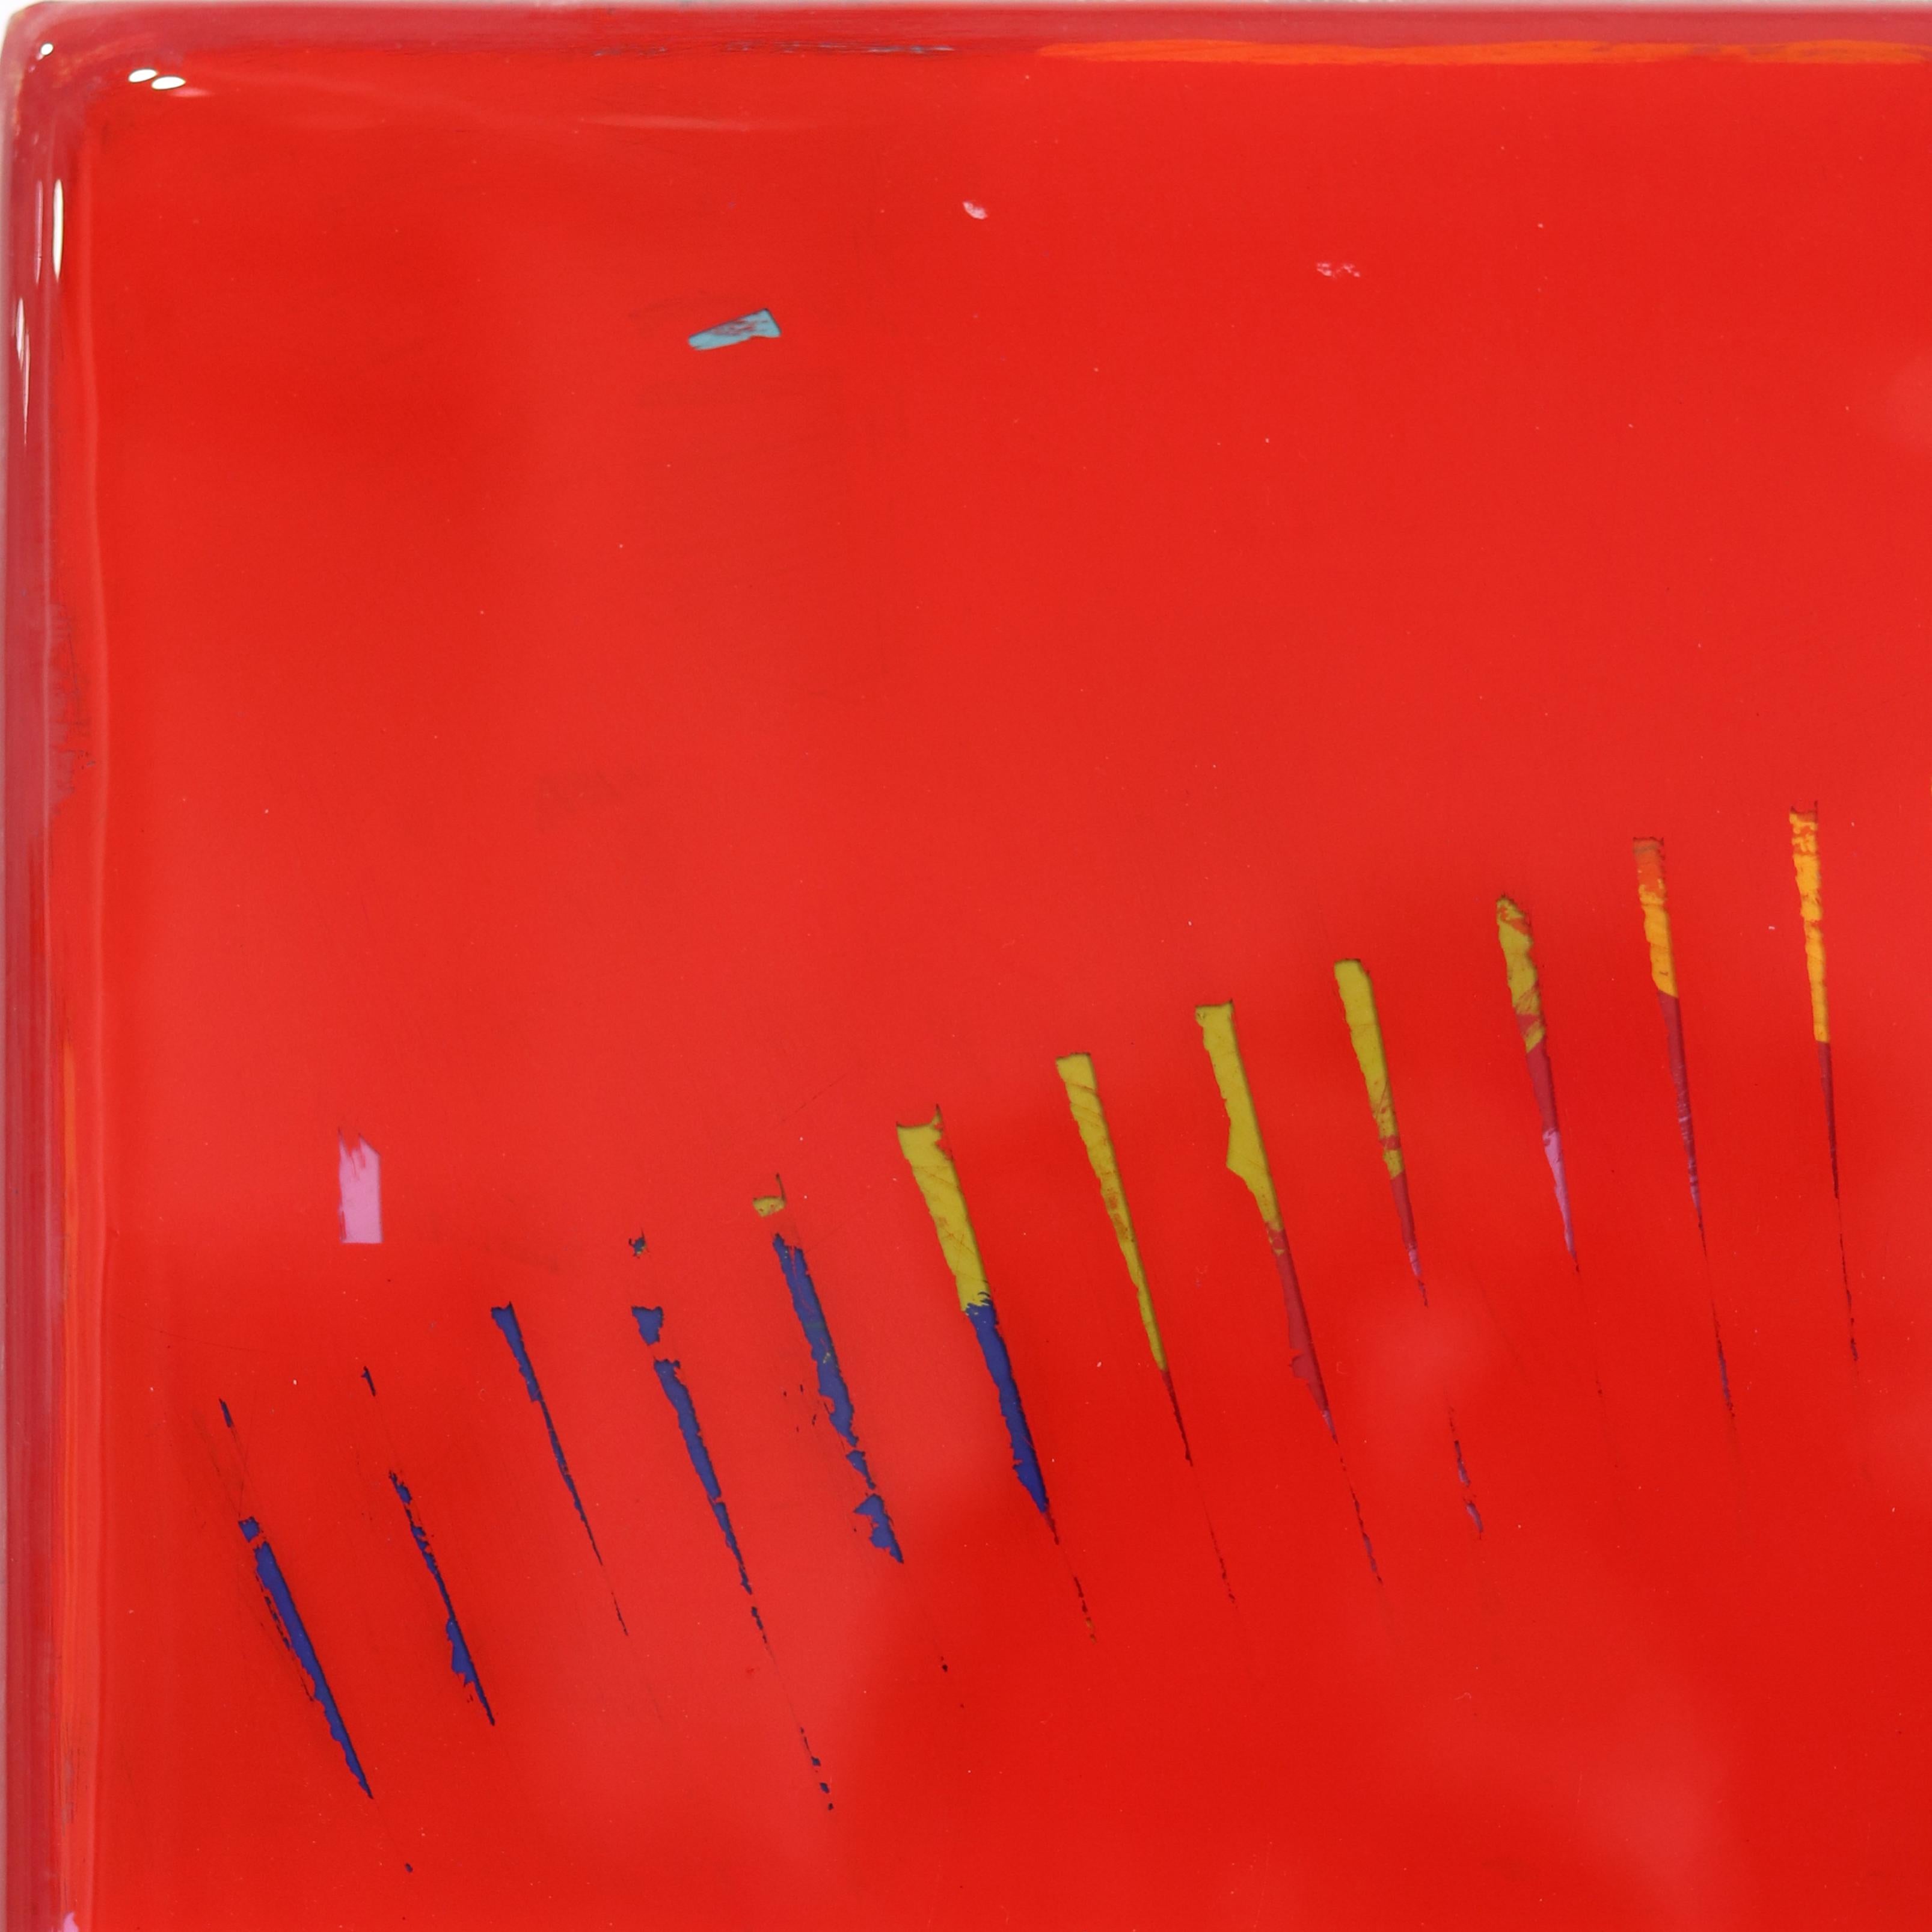 The Window 277 - Oeuvre d'art moderne et minimaliste en résine rouge à deux tons - Minimaliste Painting par Ricky Hunt